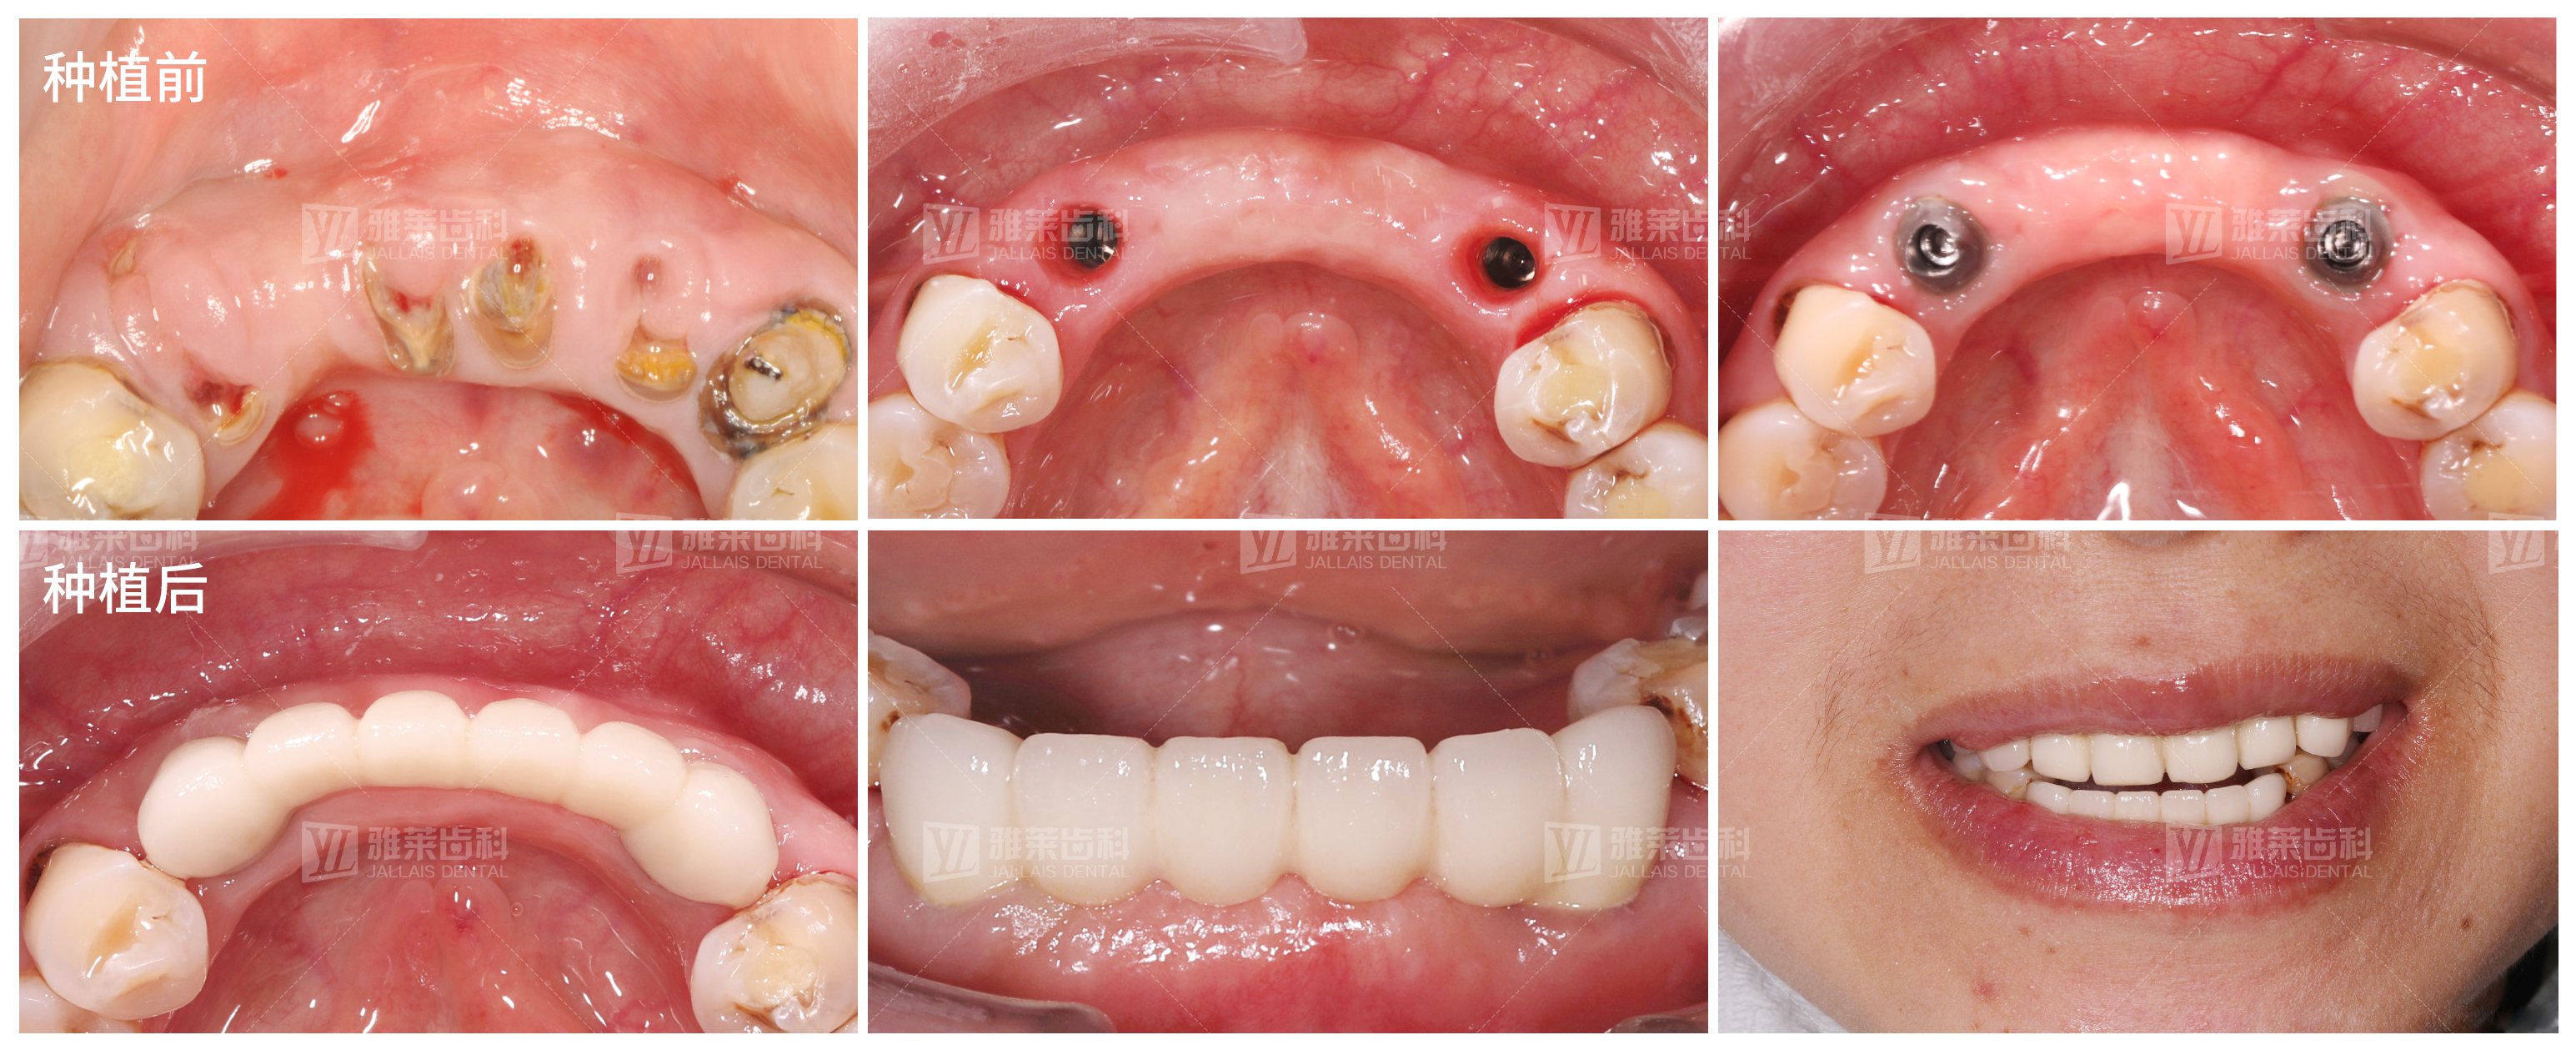 种植牙是牙缺失的优选修复方式,在缺牙区牙床内以外科手术的方式植入